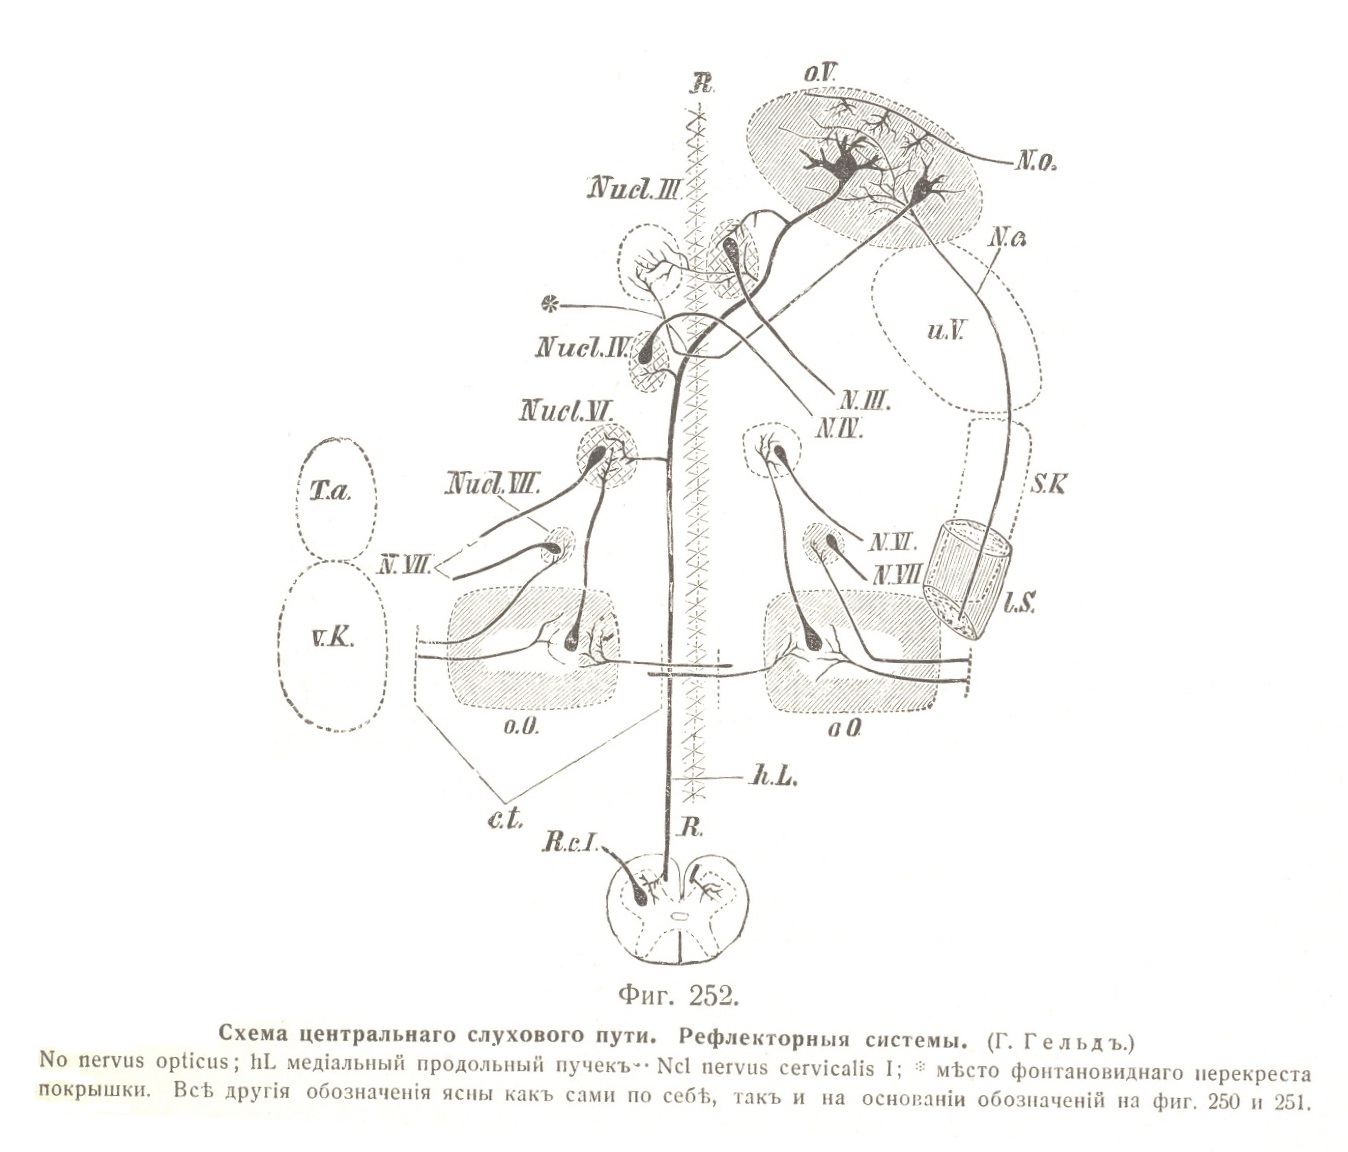 Схема центральнаго слухового пути. Рефлекторныя системы. (Г. Гельдъ.)